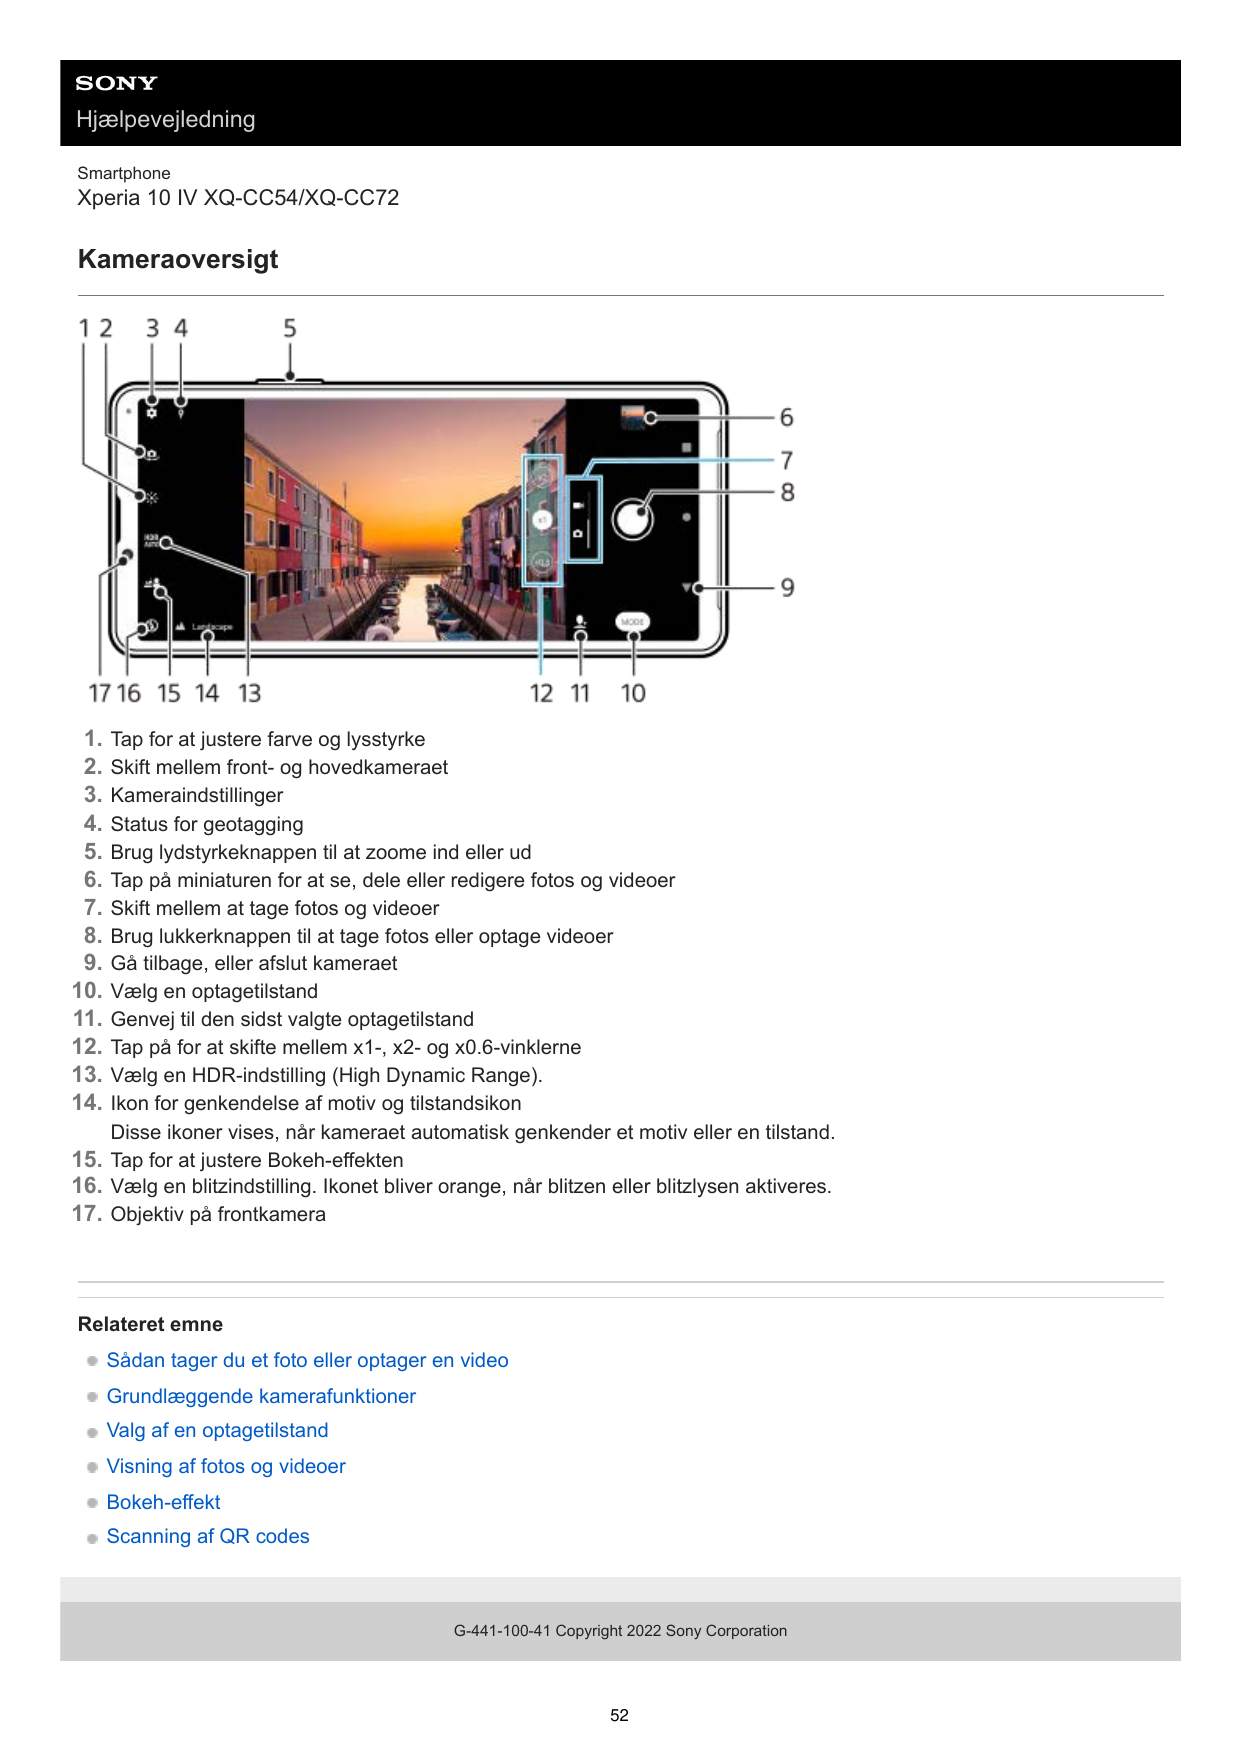 HjælpevejledningSmartphoneXperia 10 IV XQ-CC54/XQ-CC72Kameraoversigt1.2.3.4.5.6.7.8.9.10.11.12.13.14.Tap for at justere farve og